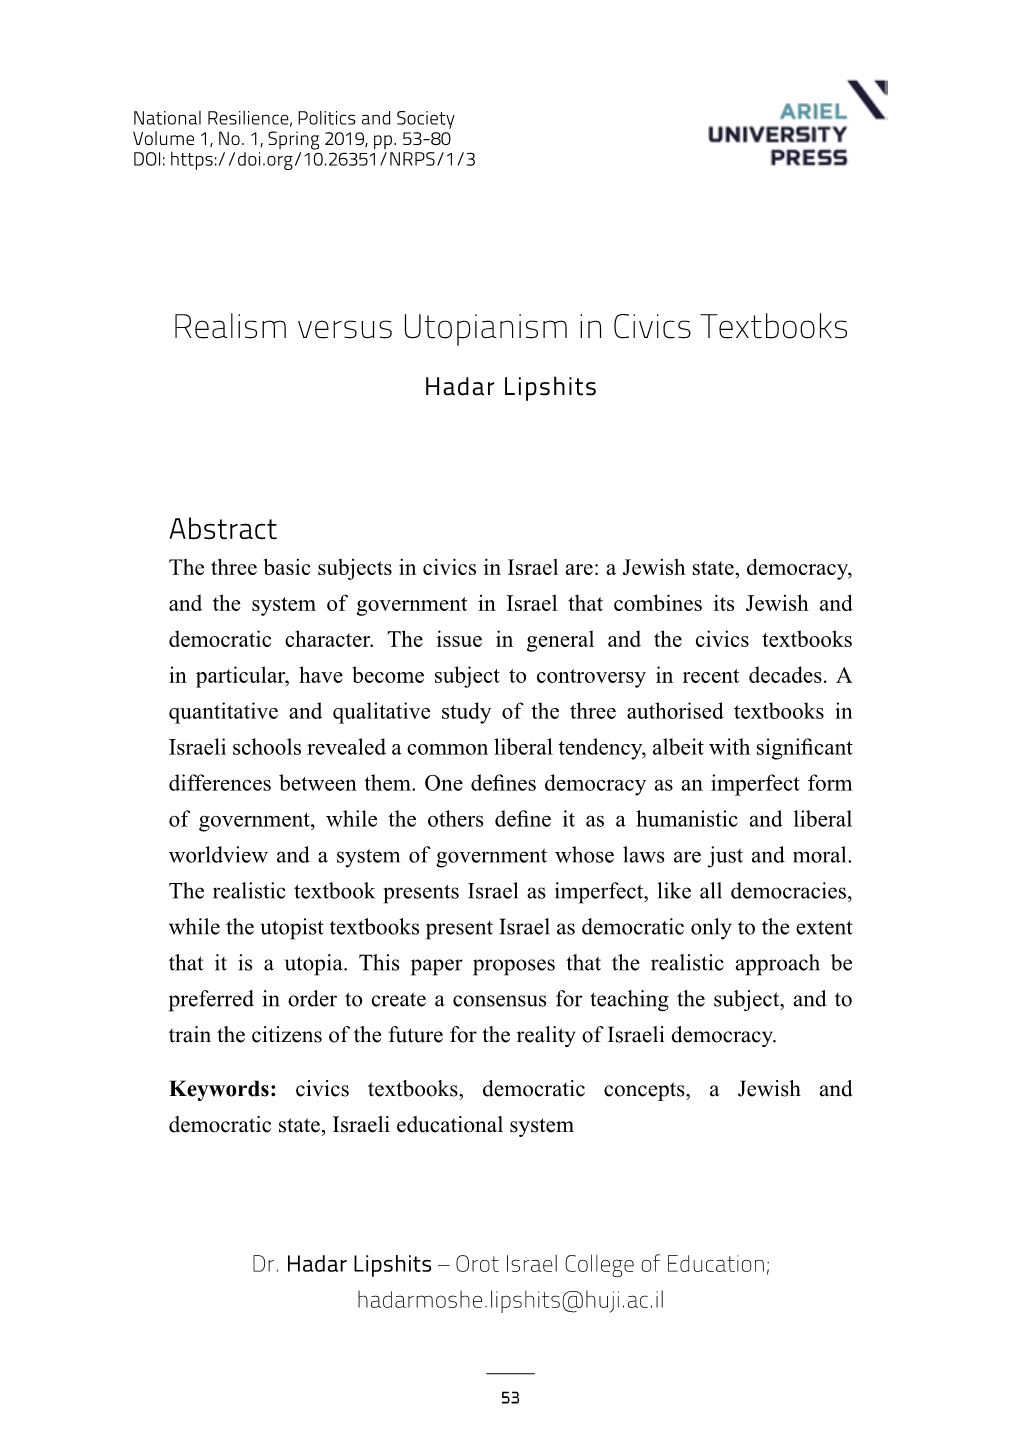 Realism Versus Utopianism in Civics Textbooks